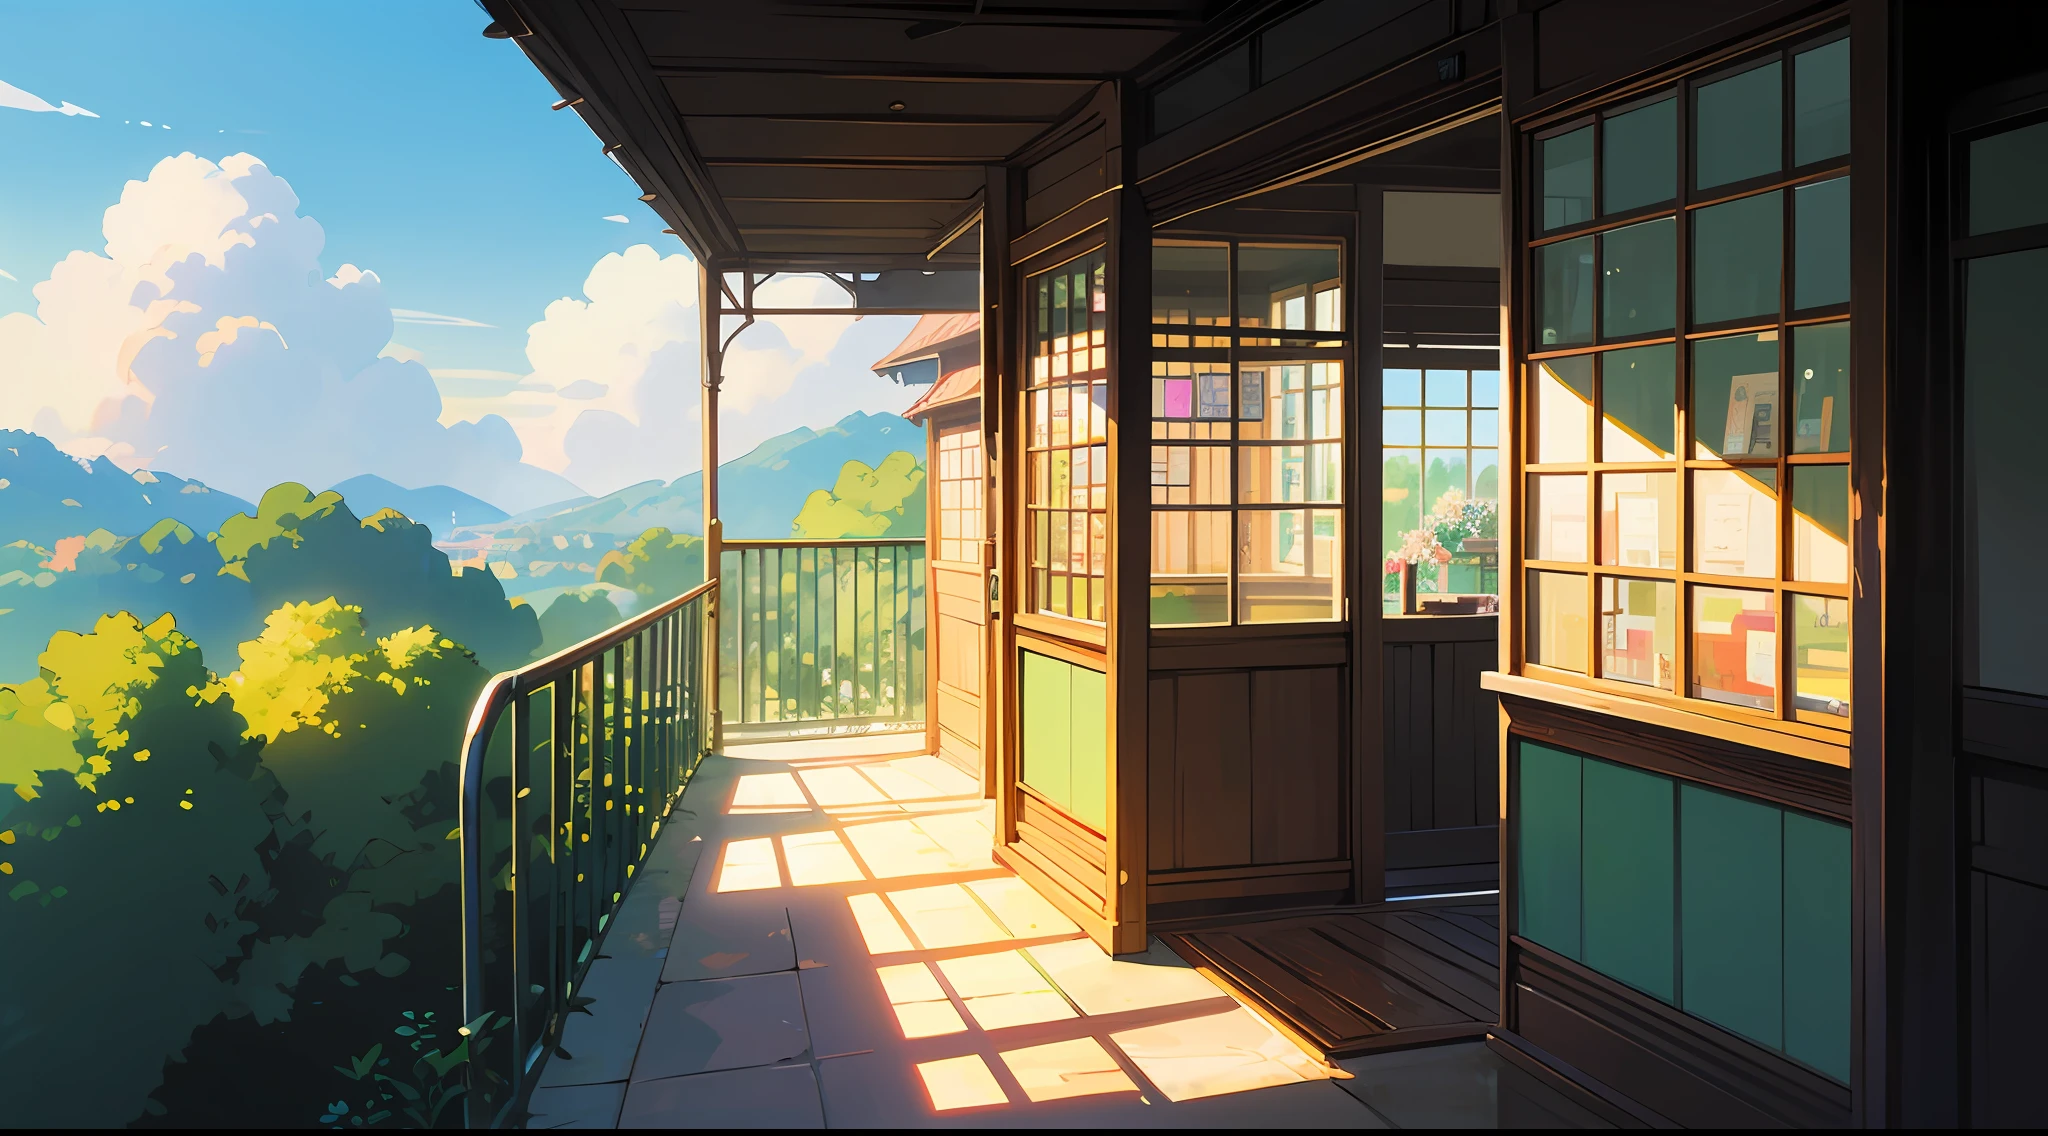 Anime - Stil Bild eines kleinen Ladens mit einem Balkon und einem Balkon, Anime-Hintergrundkunst, hochdetaillierter Laden, in Stil des Makoto Shinkai, Stil des Makoto Shinkai, Studio Ghibli Sonnenlicht, schöne Anime-Szene, schöne Anime-Szenery, detaillierte Landschaft — Breite 672, Studio glatt Makoto Shinkai, von Makoto Shinkai